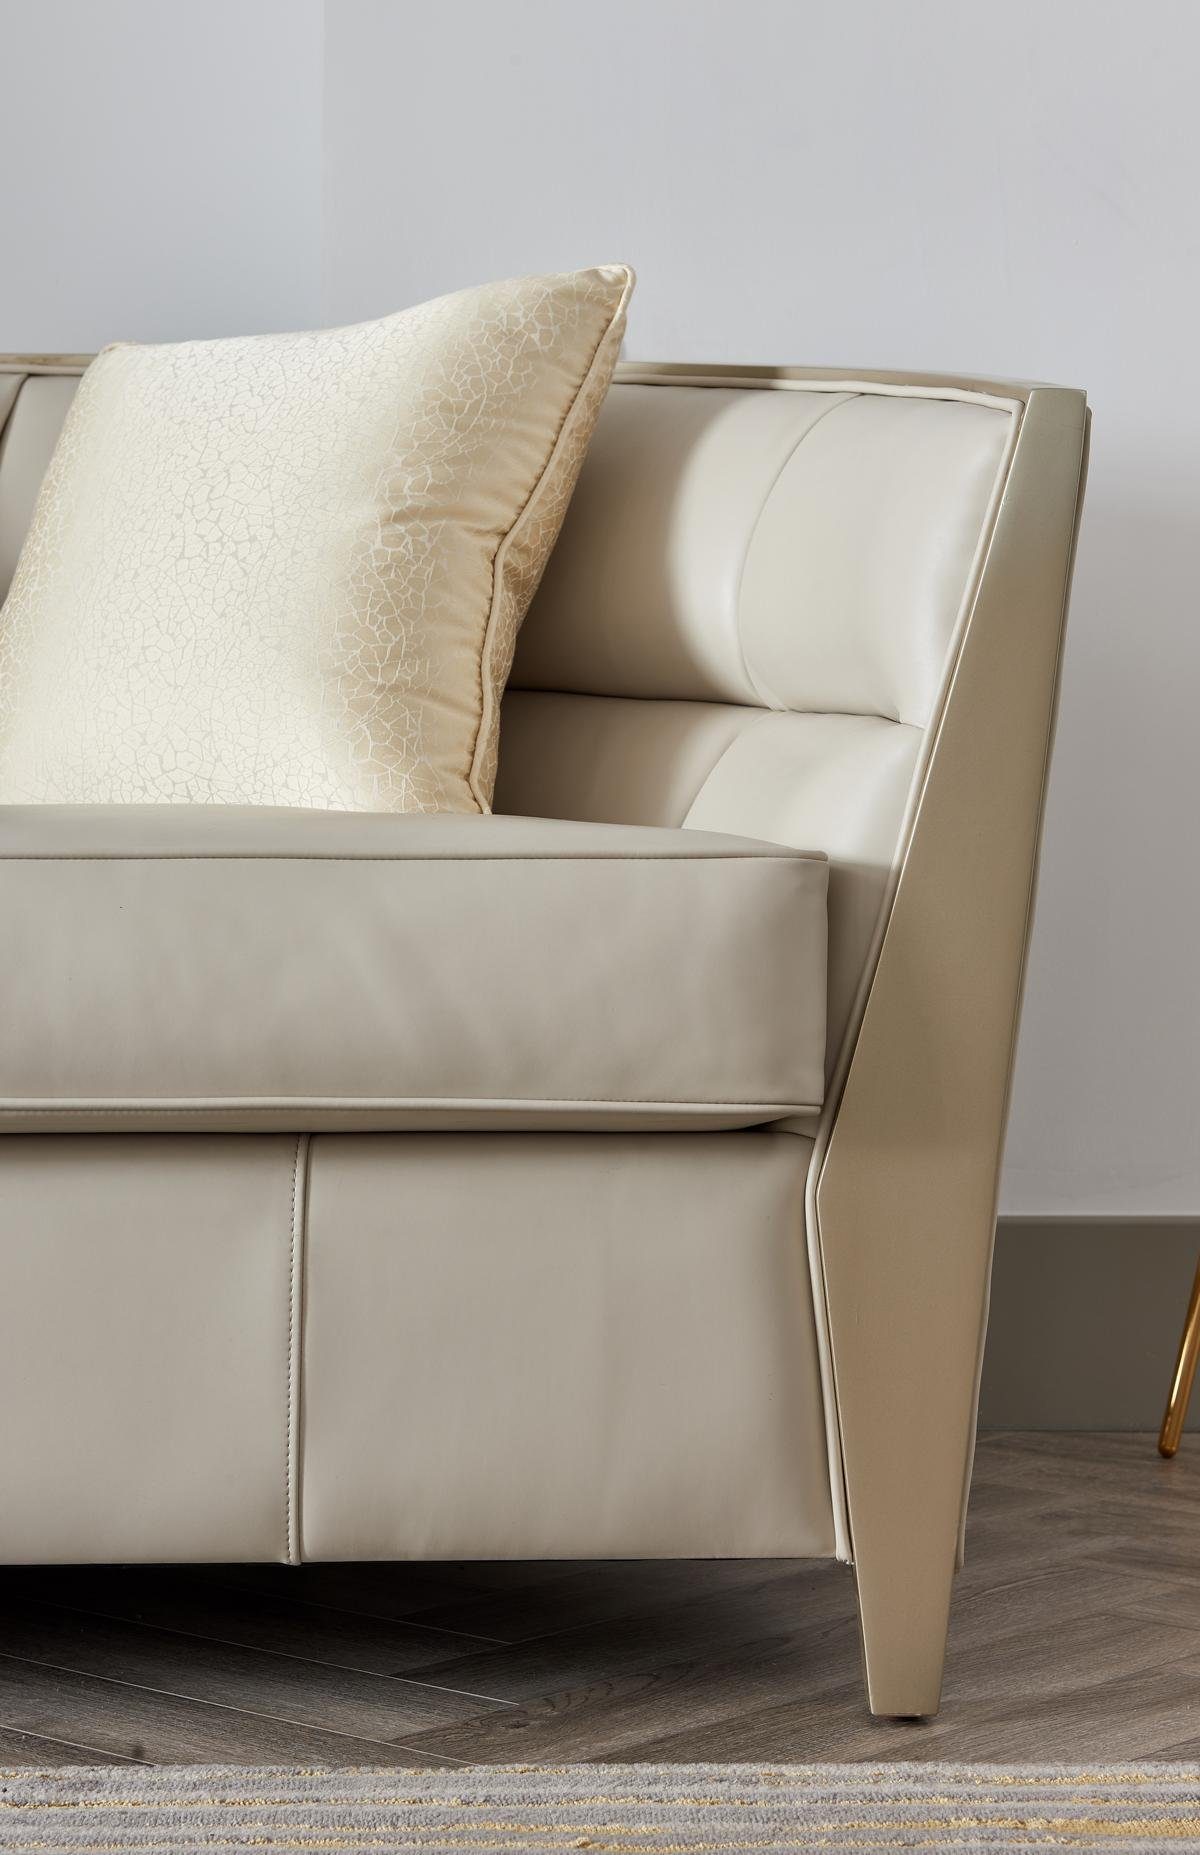 JVmoebel Sofa Sofagarnitur Sitzer Europe Luxus 4+1 Polstermöbel, Wohnzimmer in Made